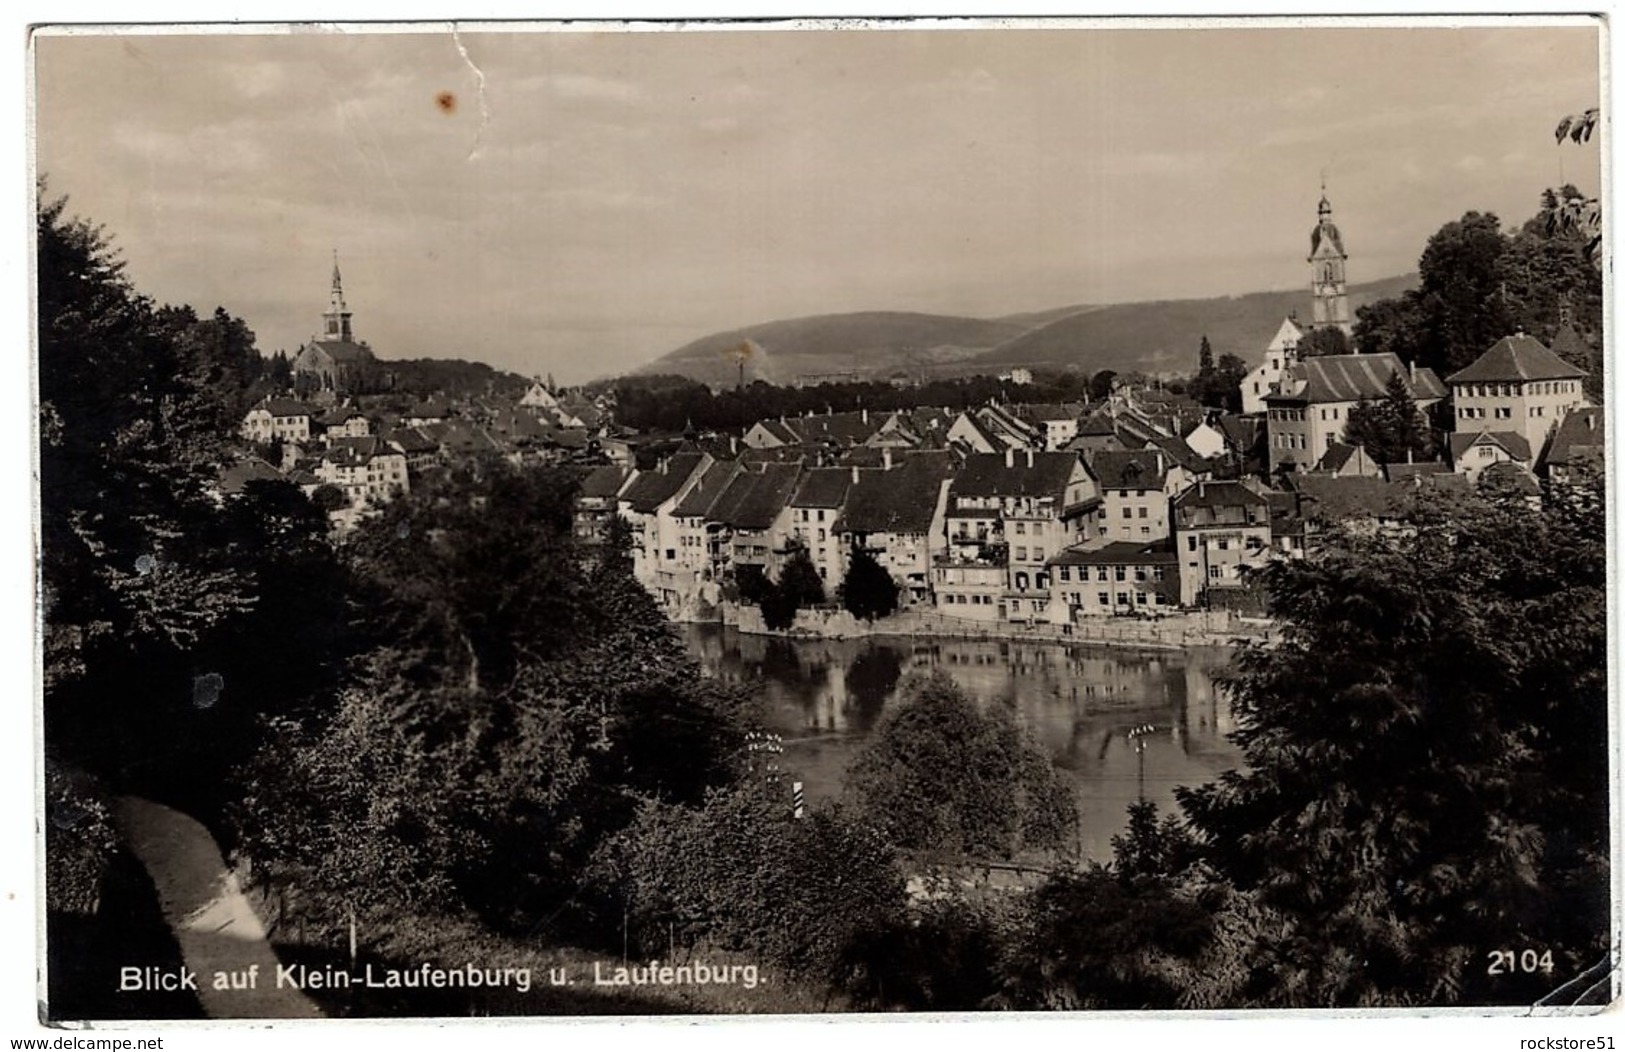 Klein-Laufenburg - Laufenburg 